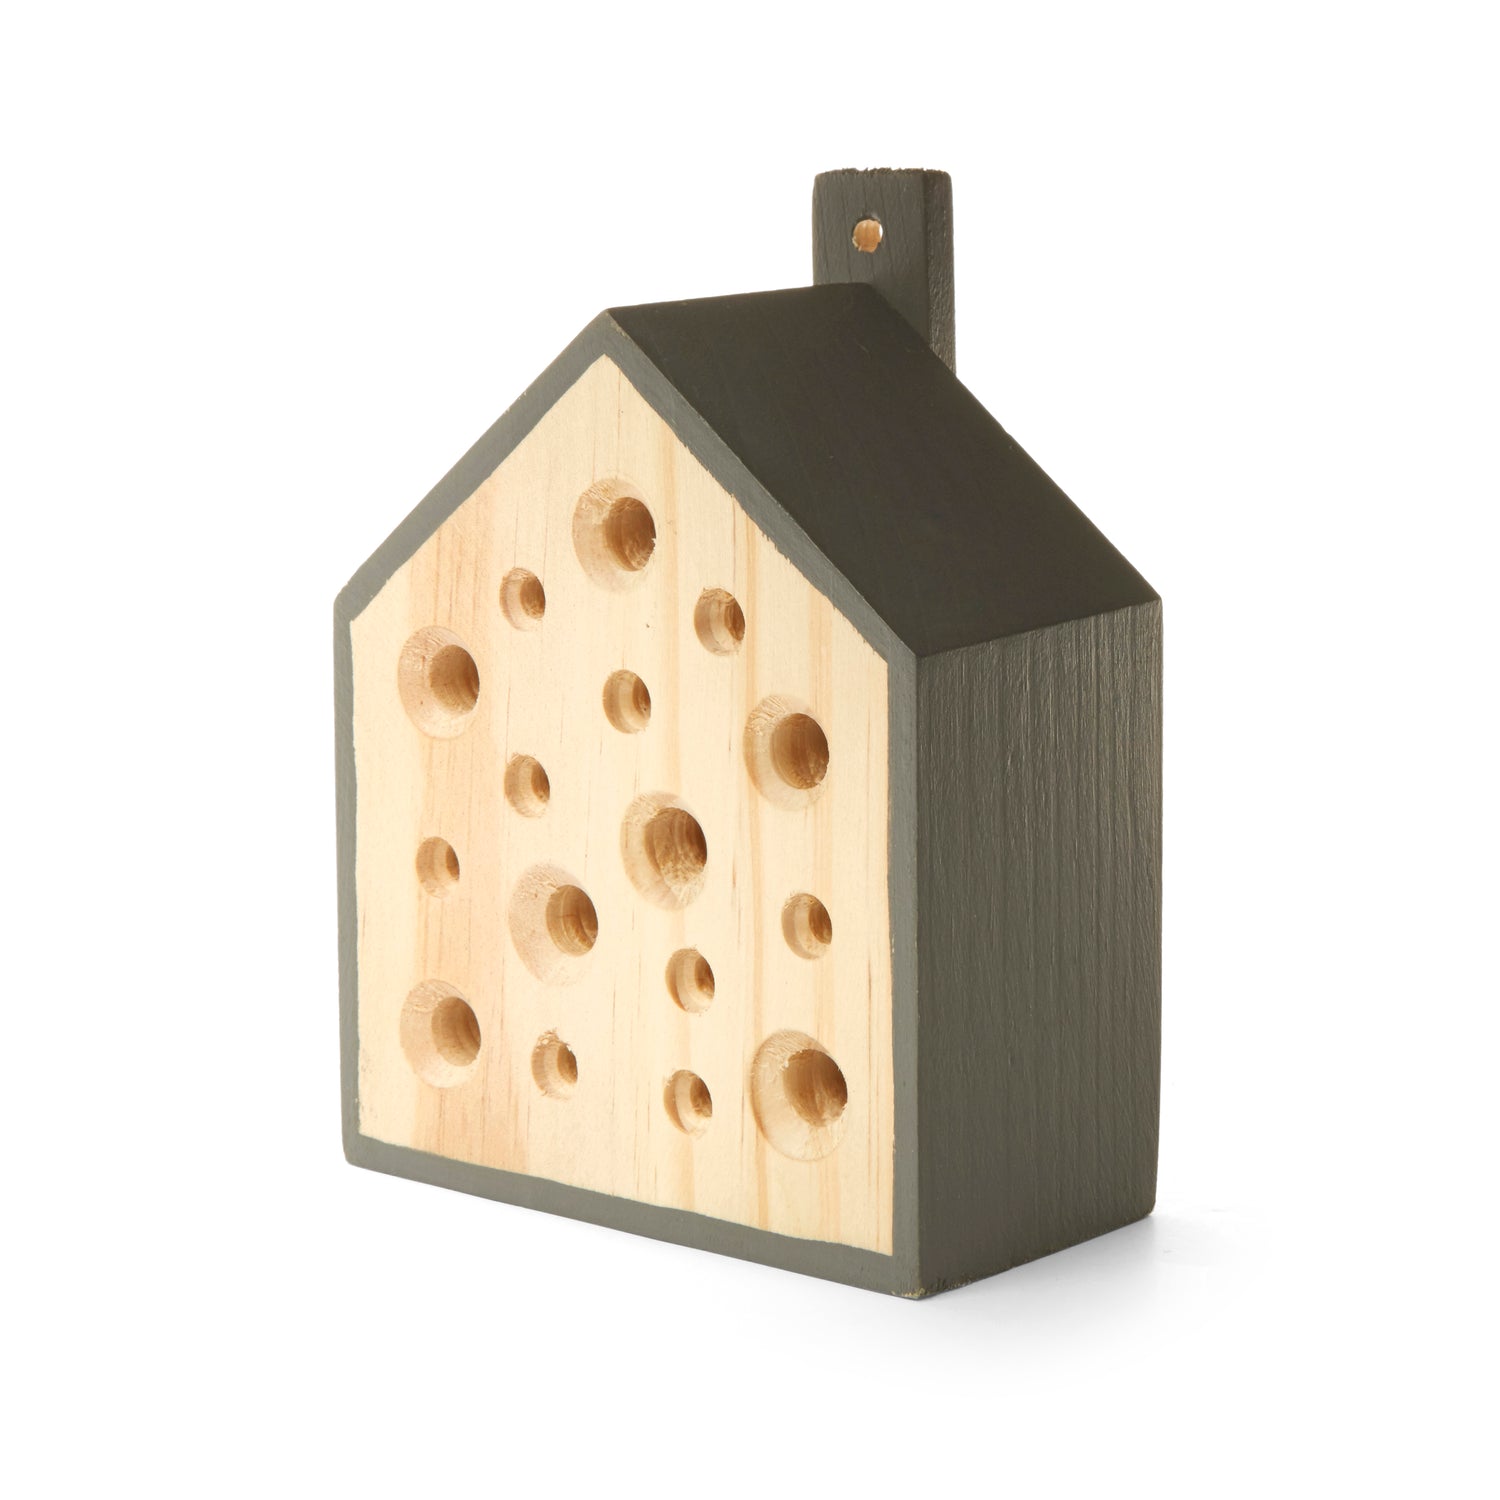 Petite maison d'abeille